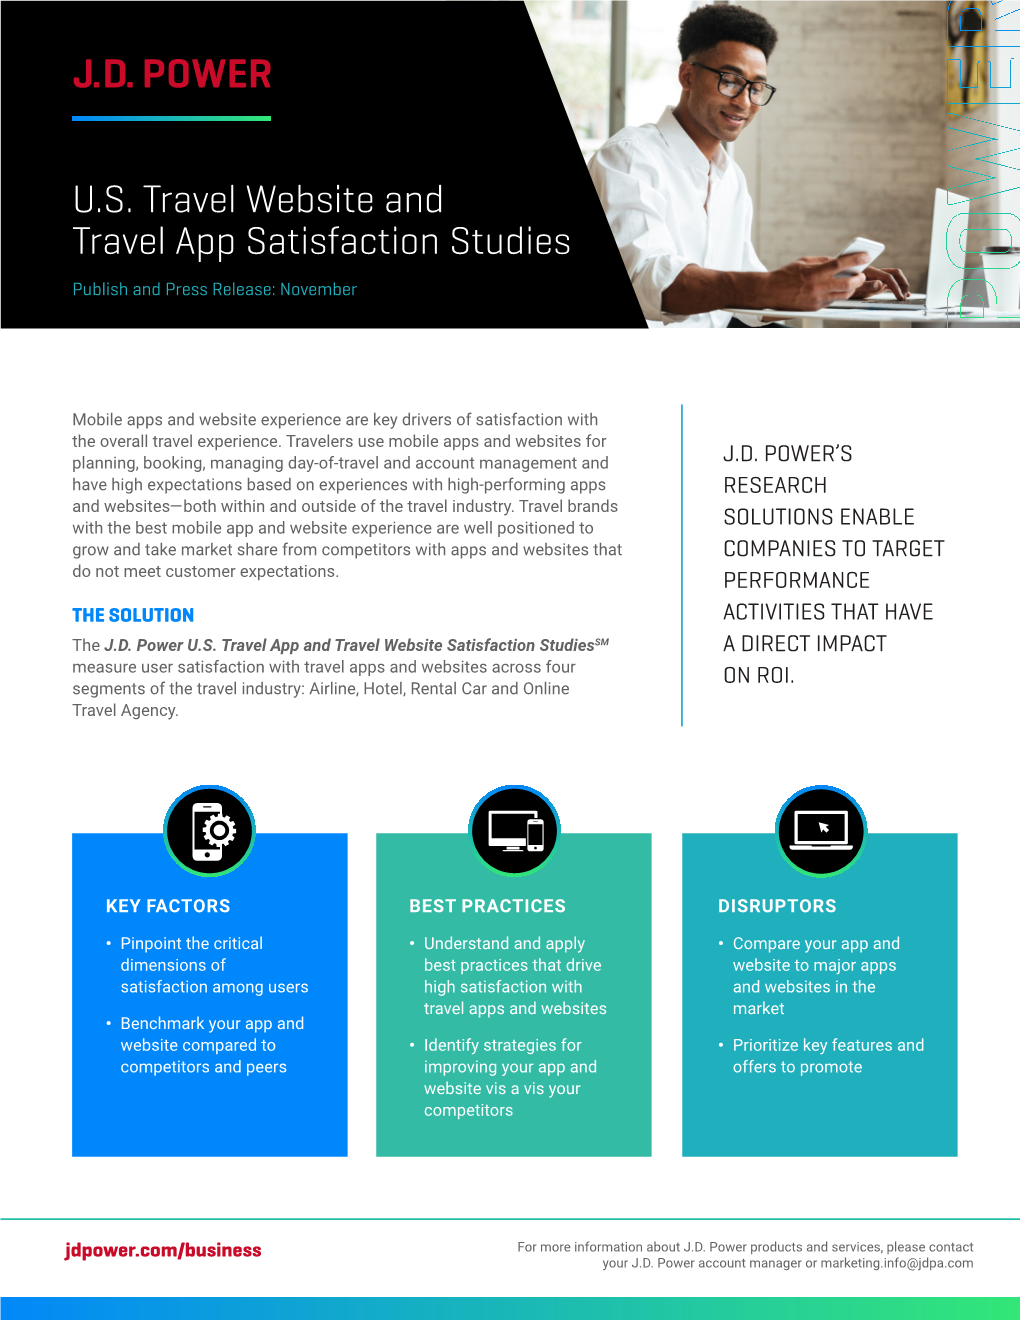 U.S. Travel Website and Travel App Satisfaction Studies